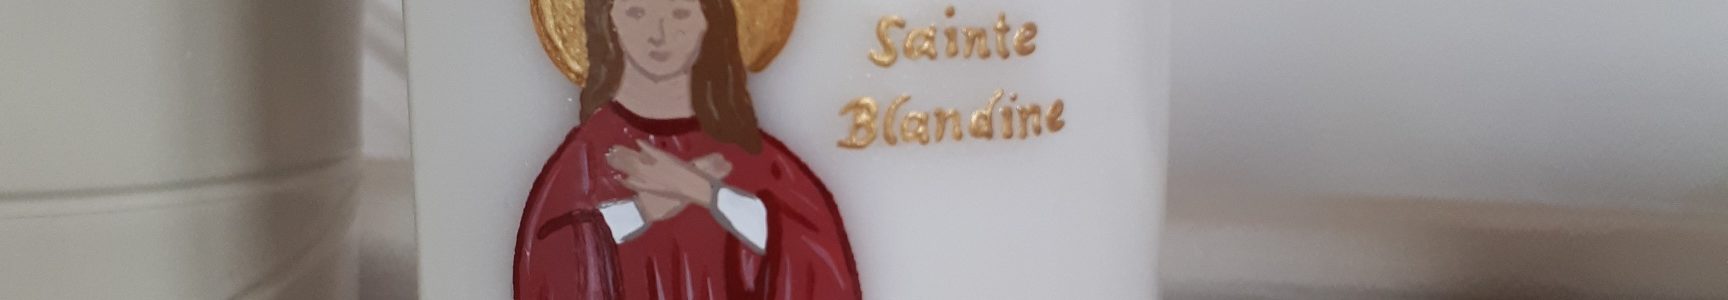 Sainte Blandine